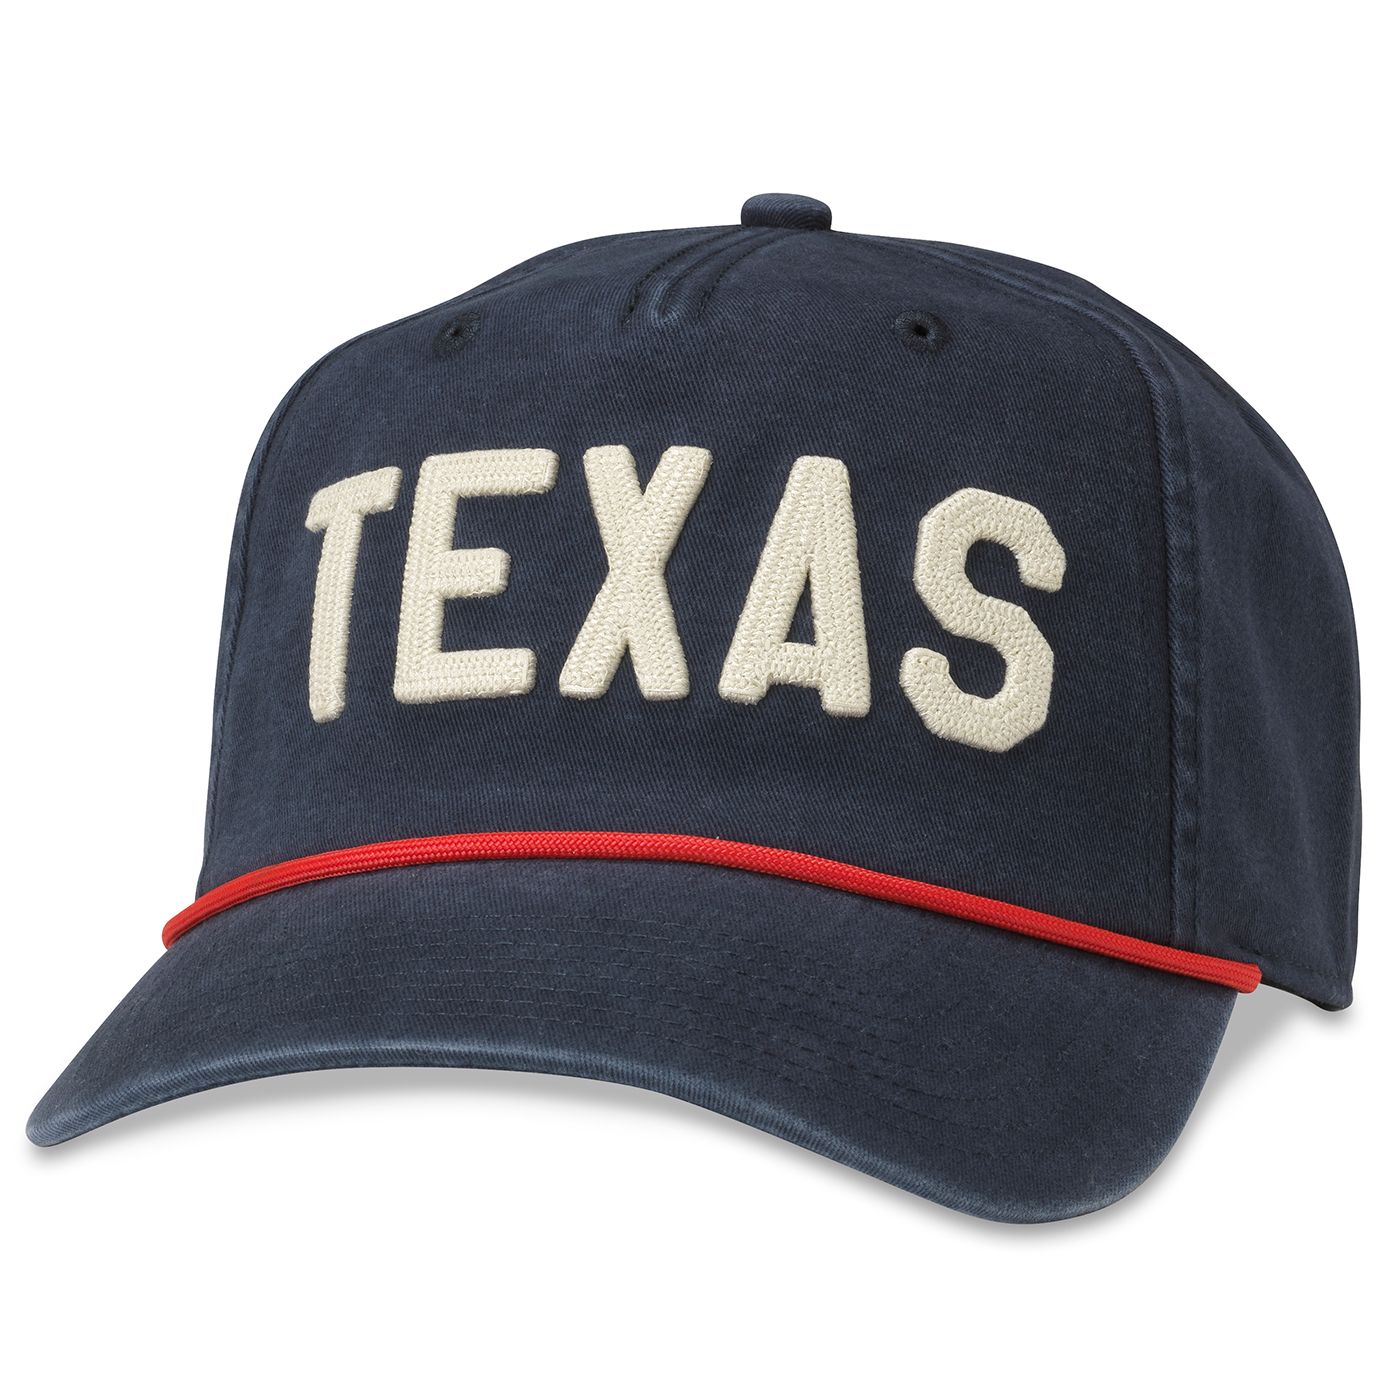 TEXAS Coast Hat